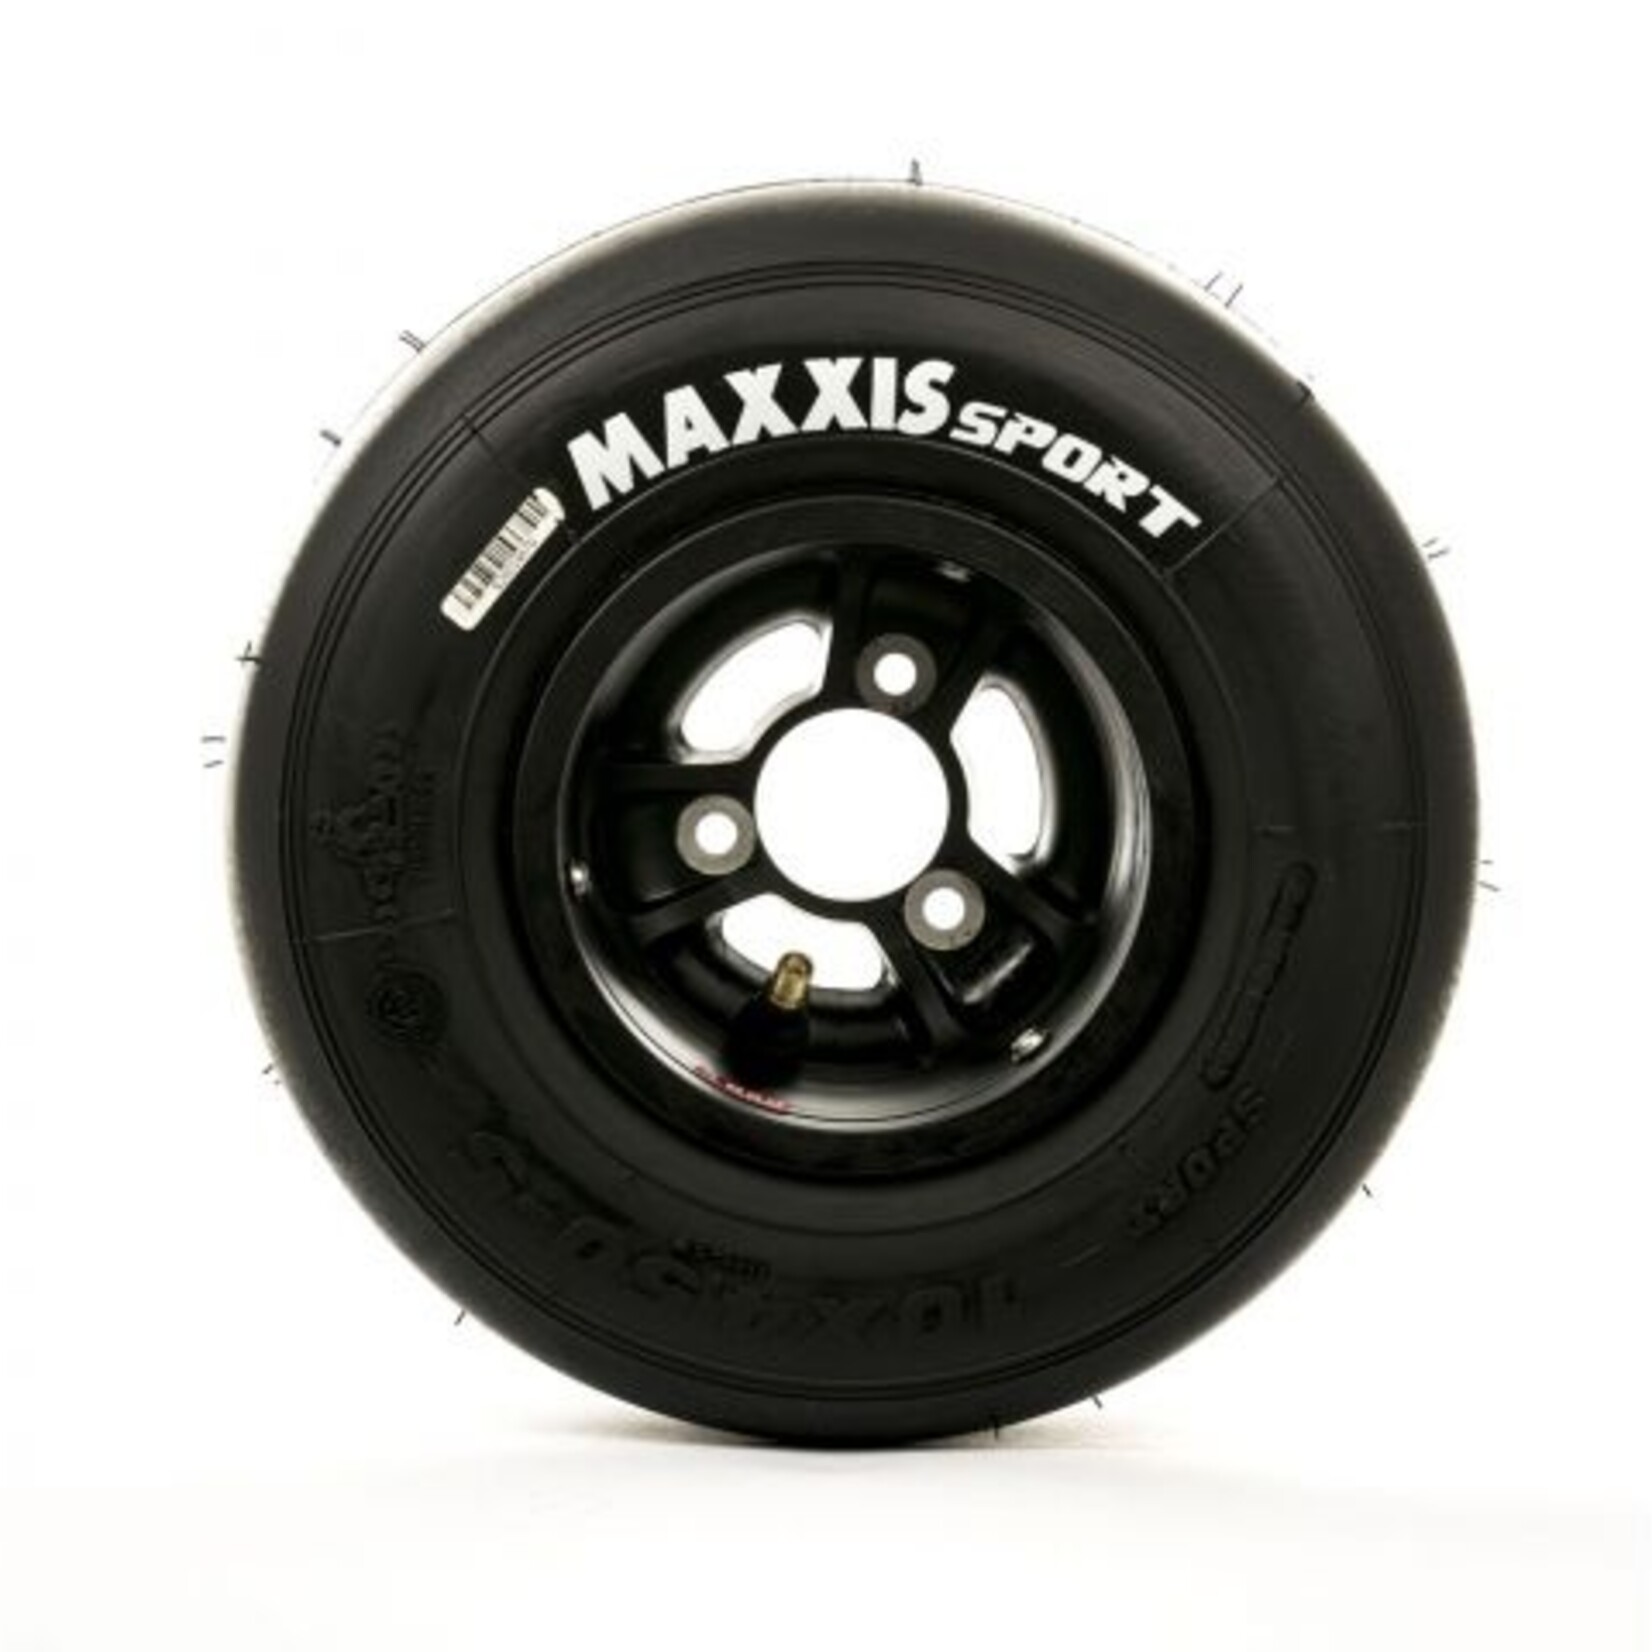 Maxxis MAXXIS SPORT 10X4.50-5 (voorband)